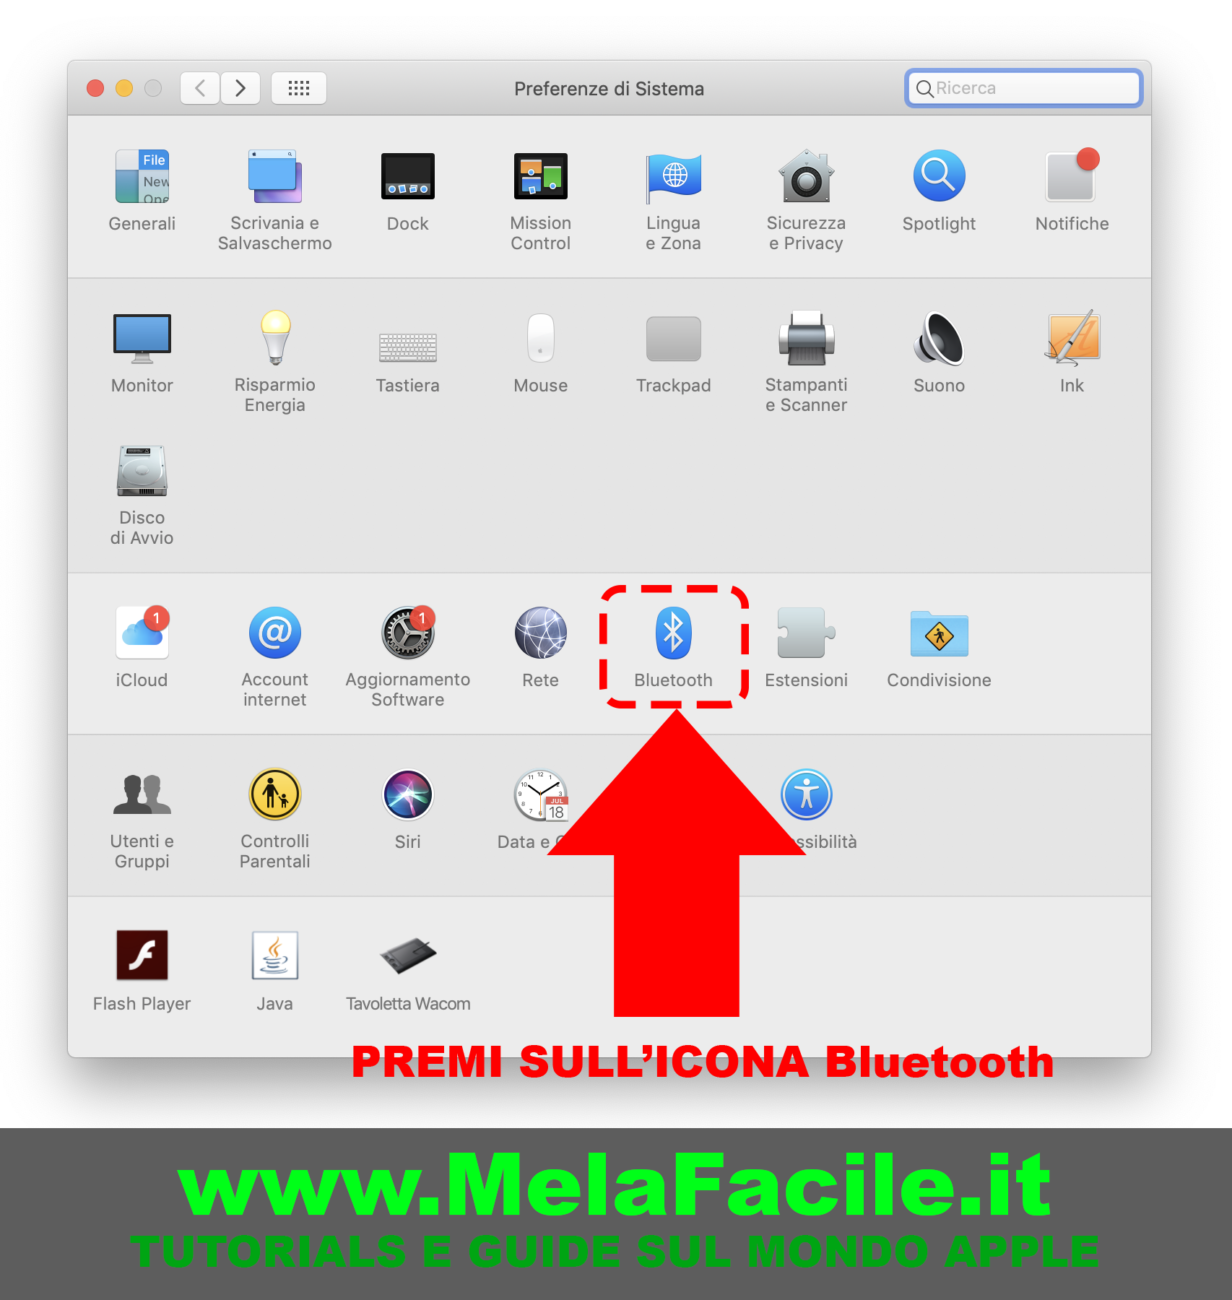 MelaFacile.it – 4 – come usare iPhone, iPad, iPod, Mac, Apple Watch, Apple TV